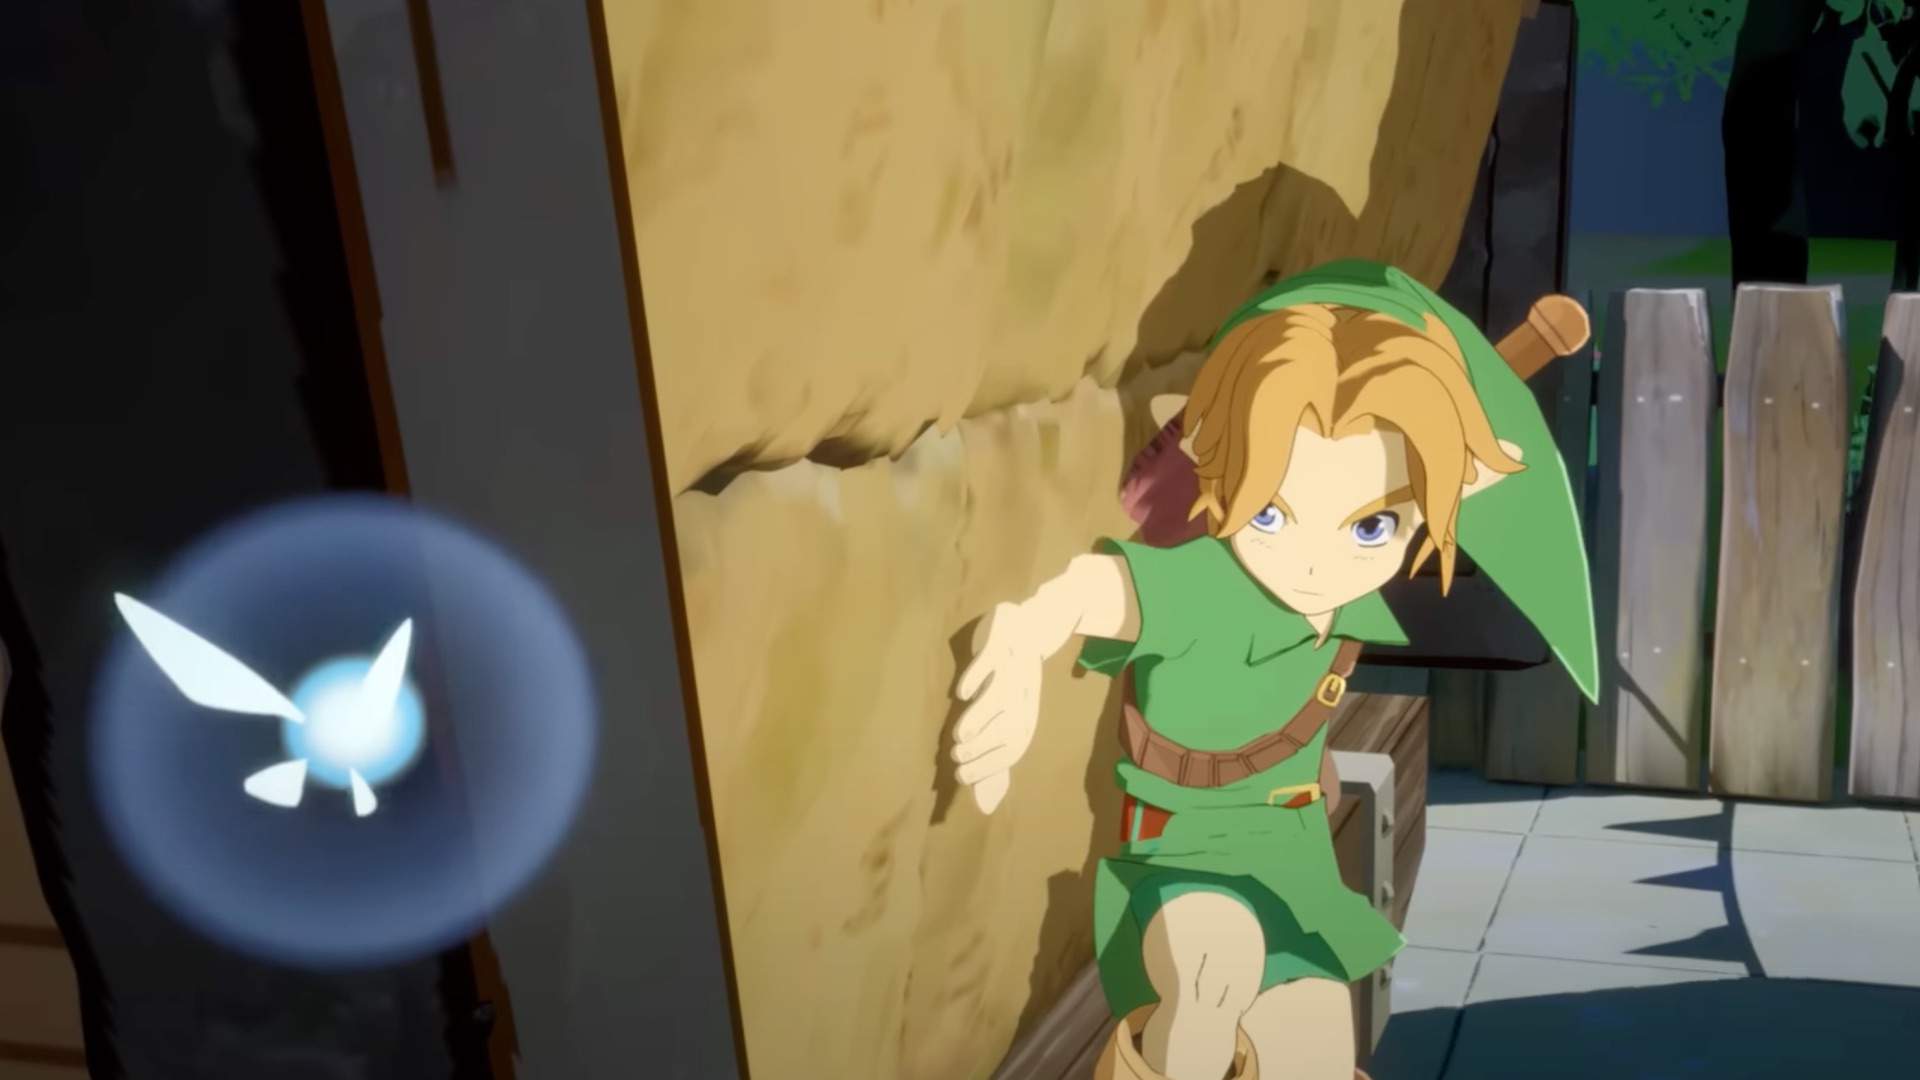 Se um filme de Zelda fosse feito por Ghibli, seria ótimo